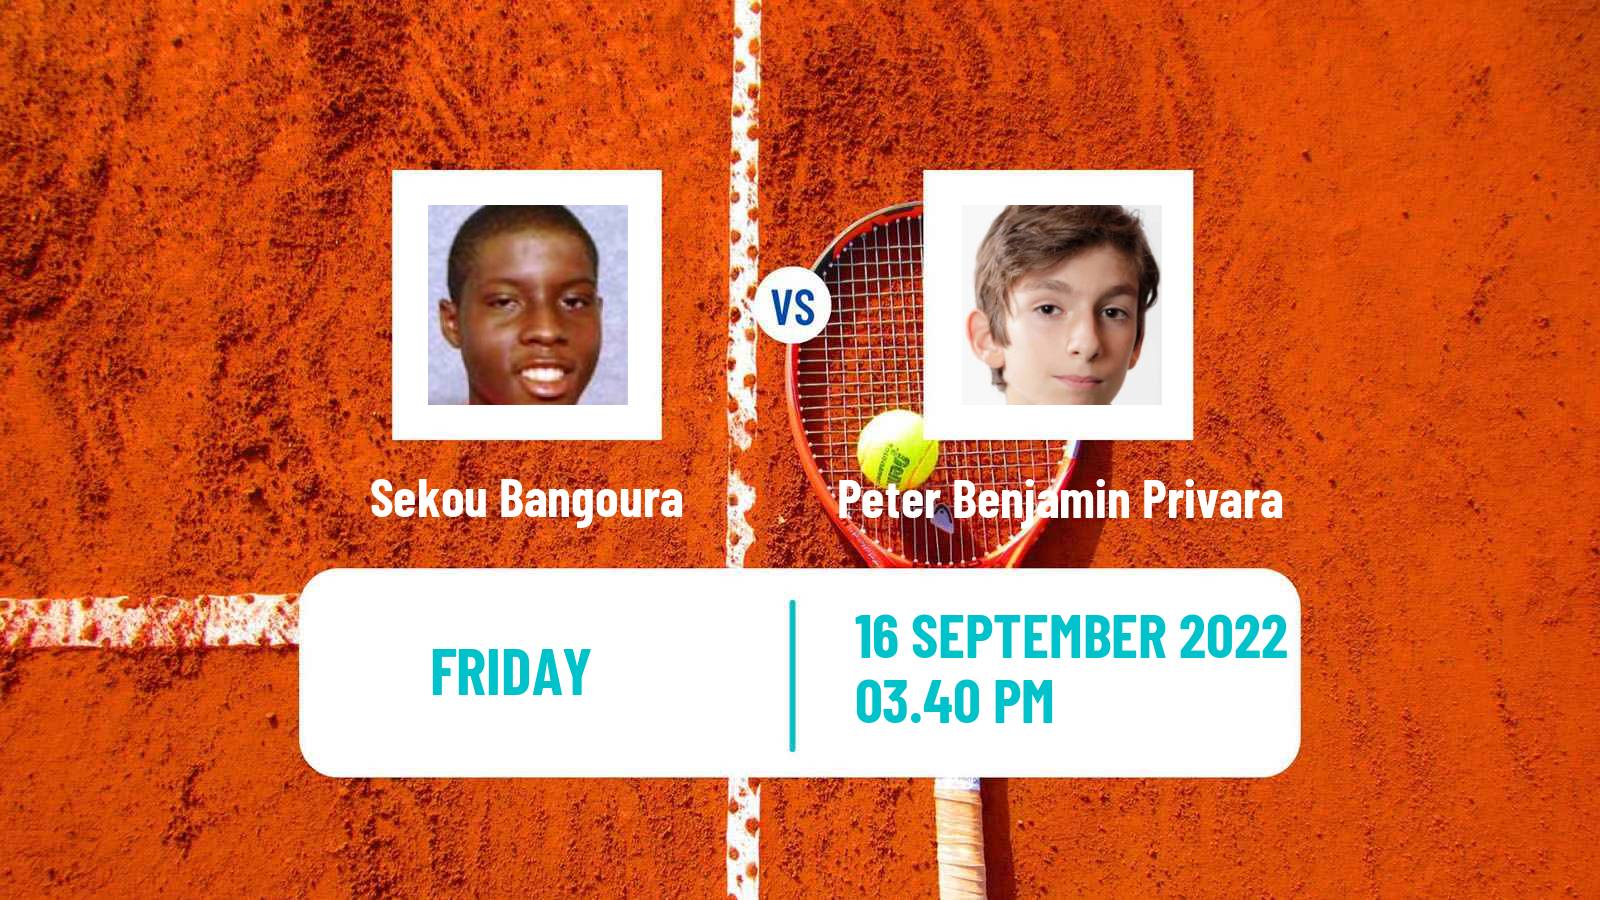 Tennis ITF Tournaments Sekou Bangoura - Peter Benjamin Privara